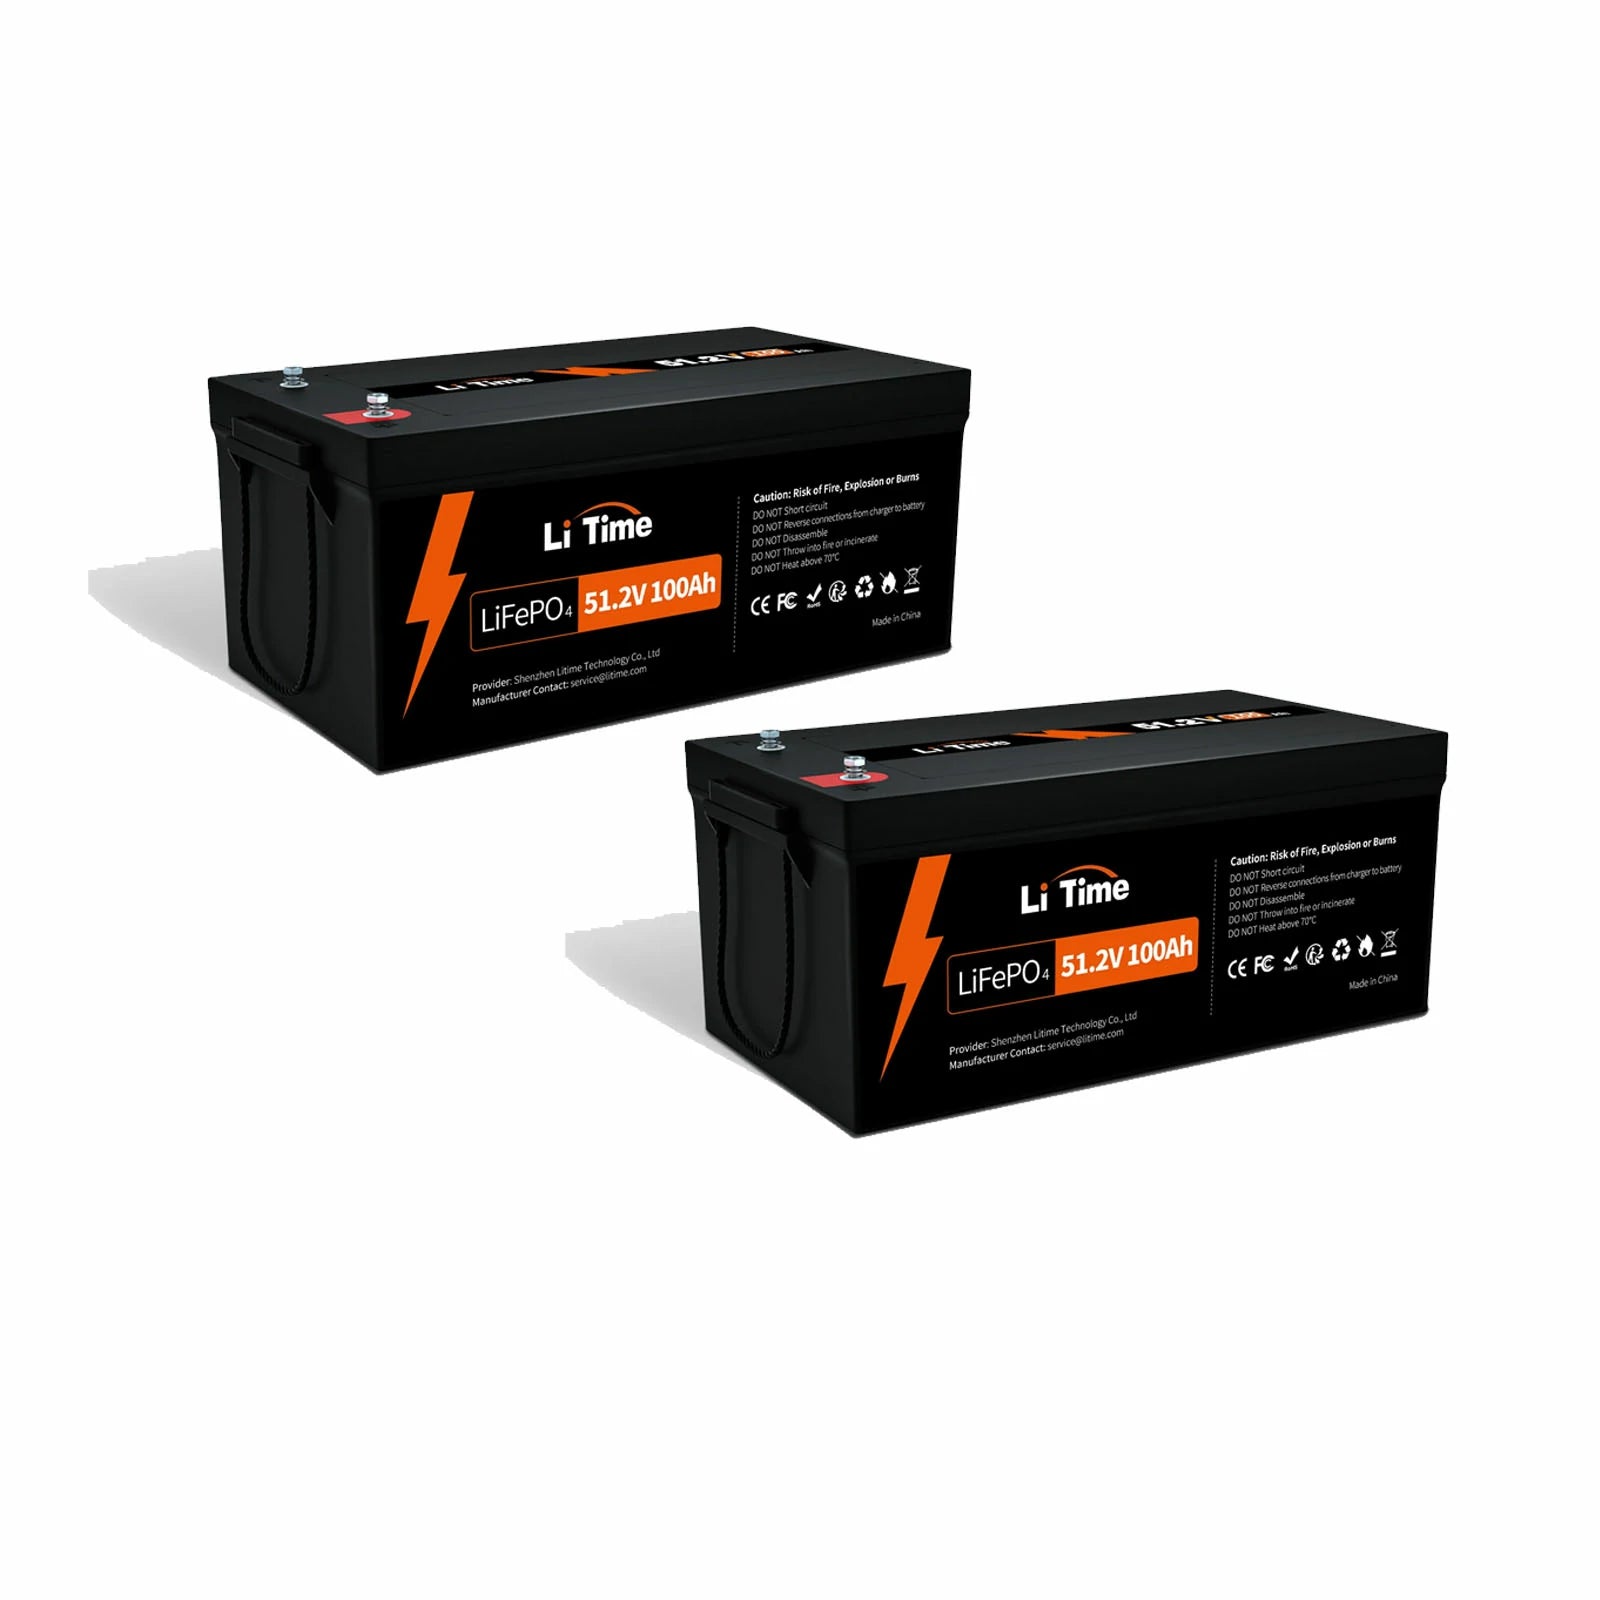 LiTime 51.2V100Ah リン酸鉄リチウムイオンバッテリー 5120Wh LiFePO4 バッテリー https://jp.litime.com/products/48v-100ah